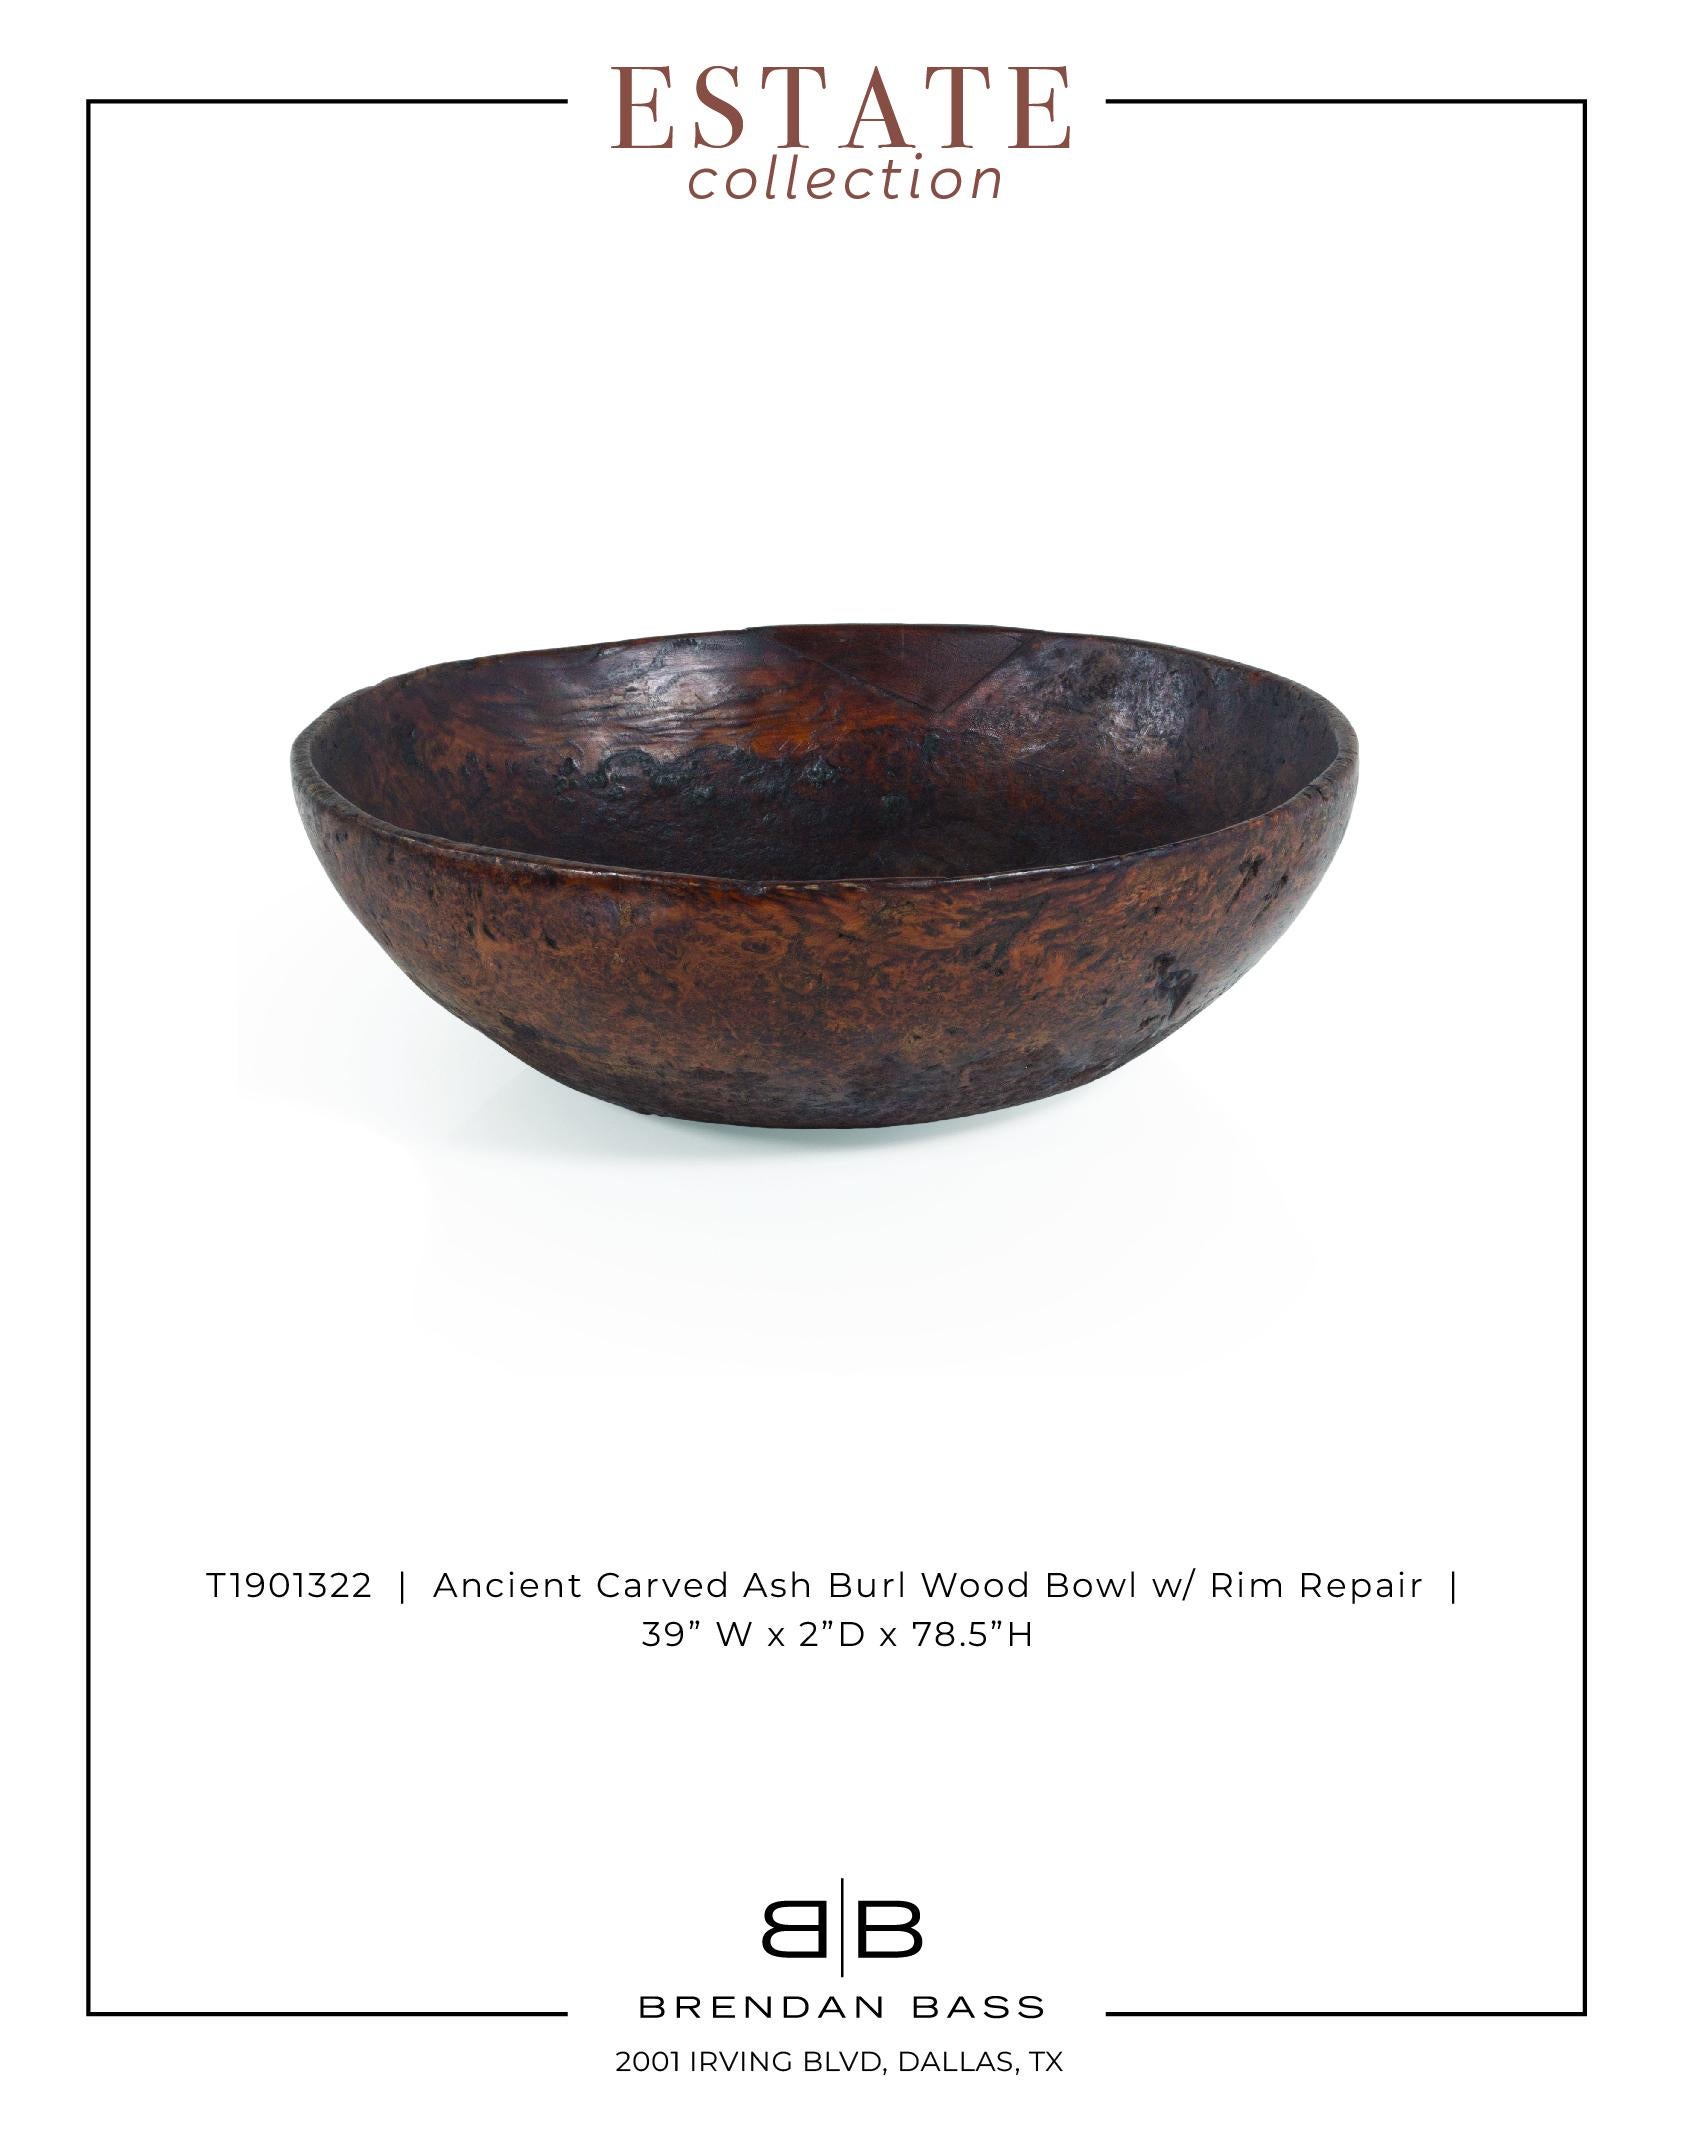 20th Century Ancient Carved Ash Burl Wood Bowl with Rim Repair